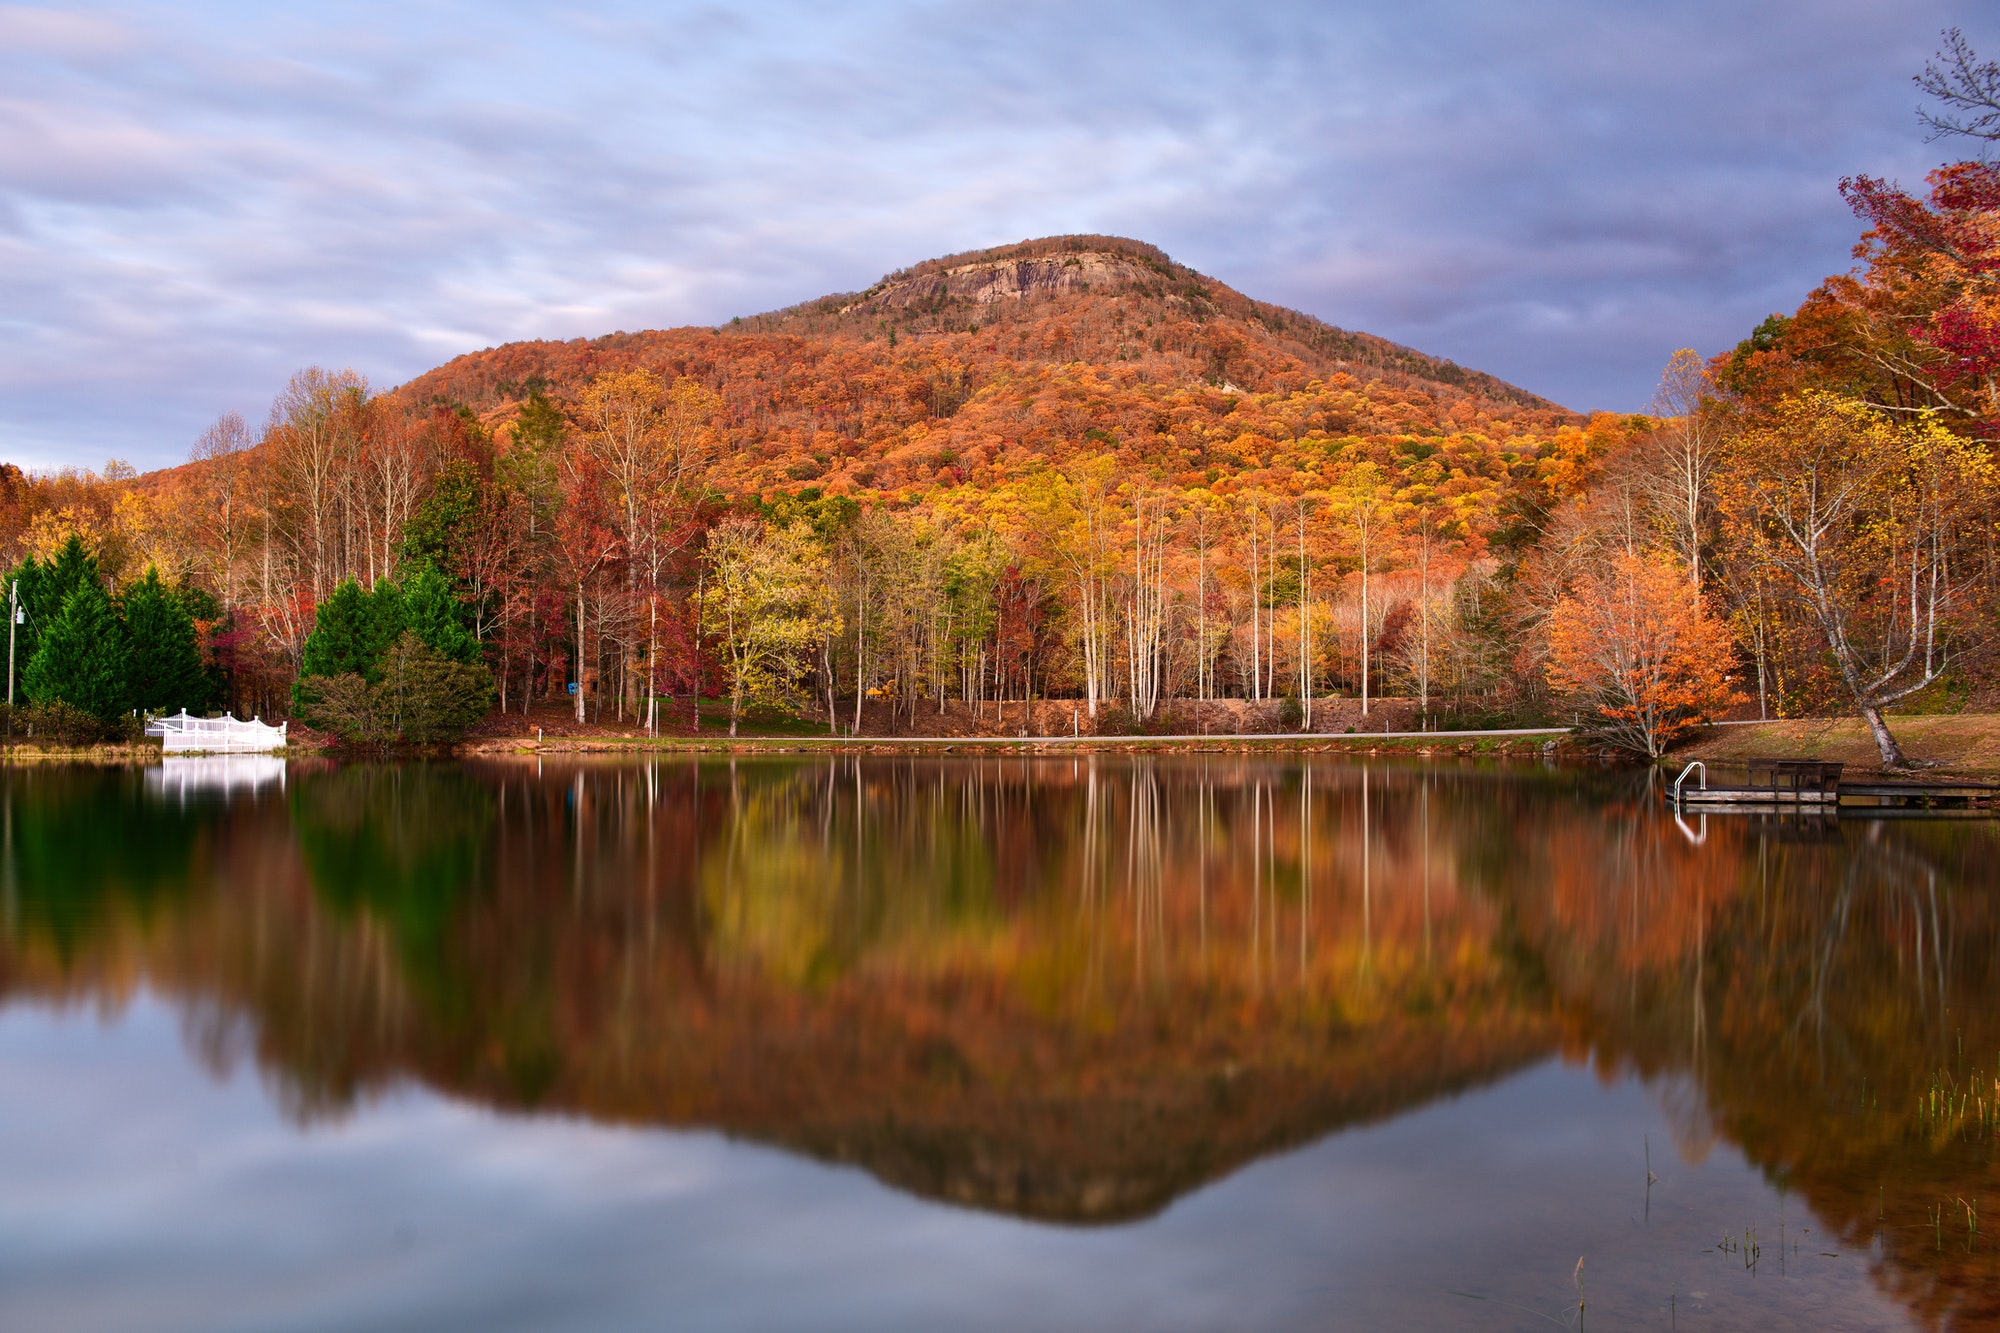 Mt. Yonah, Georgia, USA in Autumn